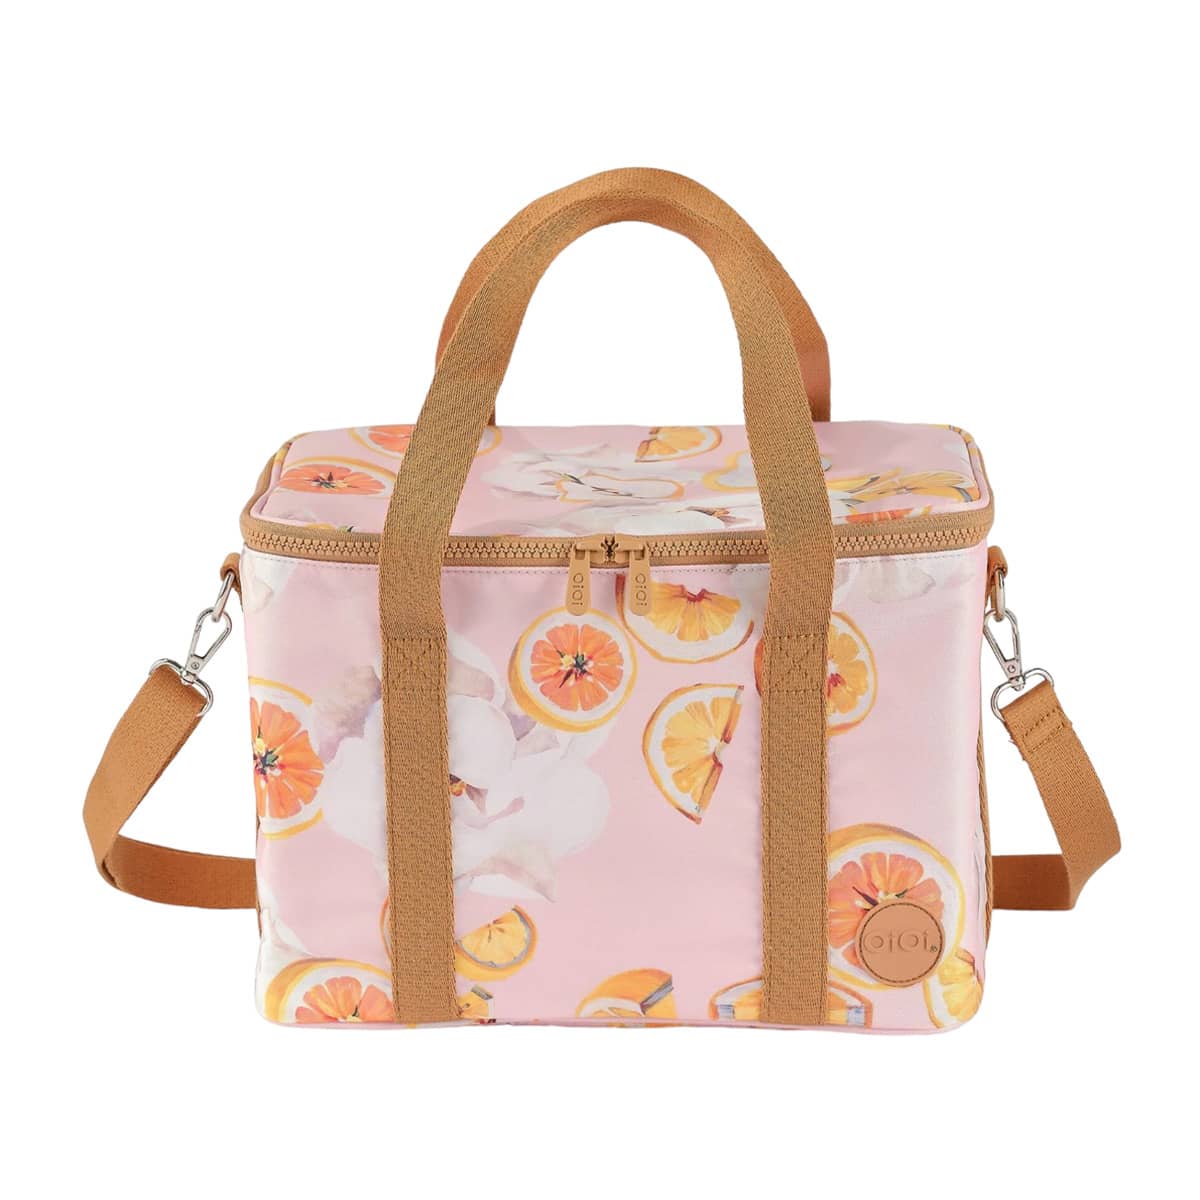 OiOi Maxi Insulated Lunch Bag - Tutti Frutti